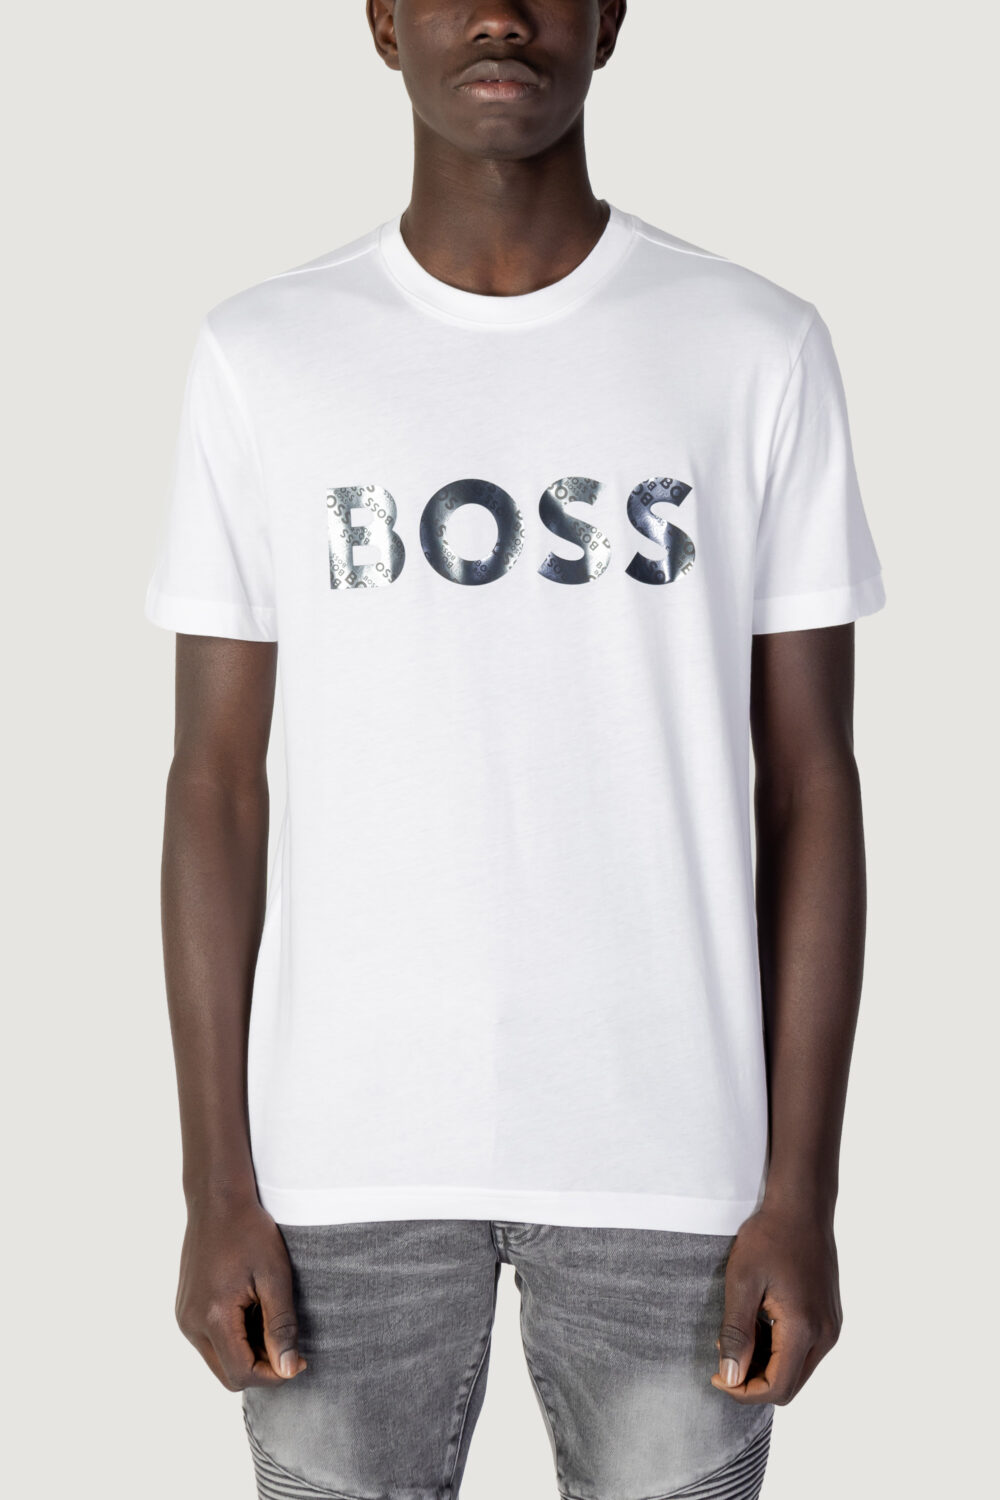 T-shirt Boss tee 3 Bianco - Foto 1